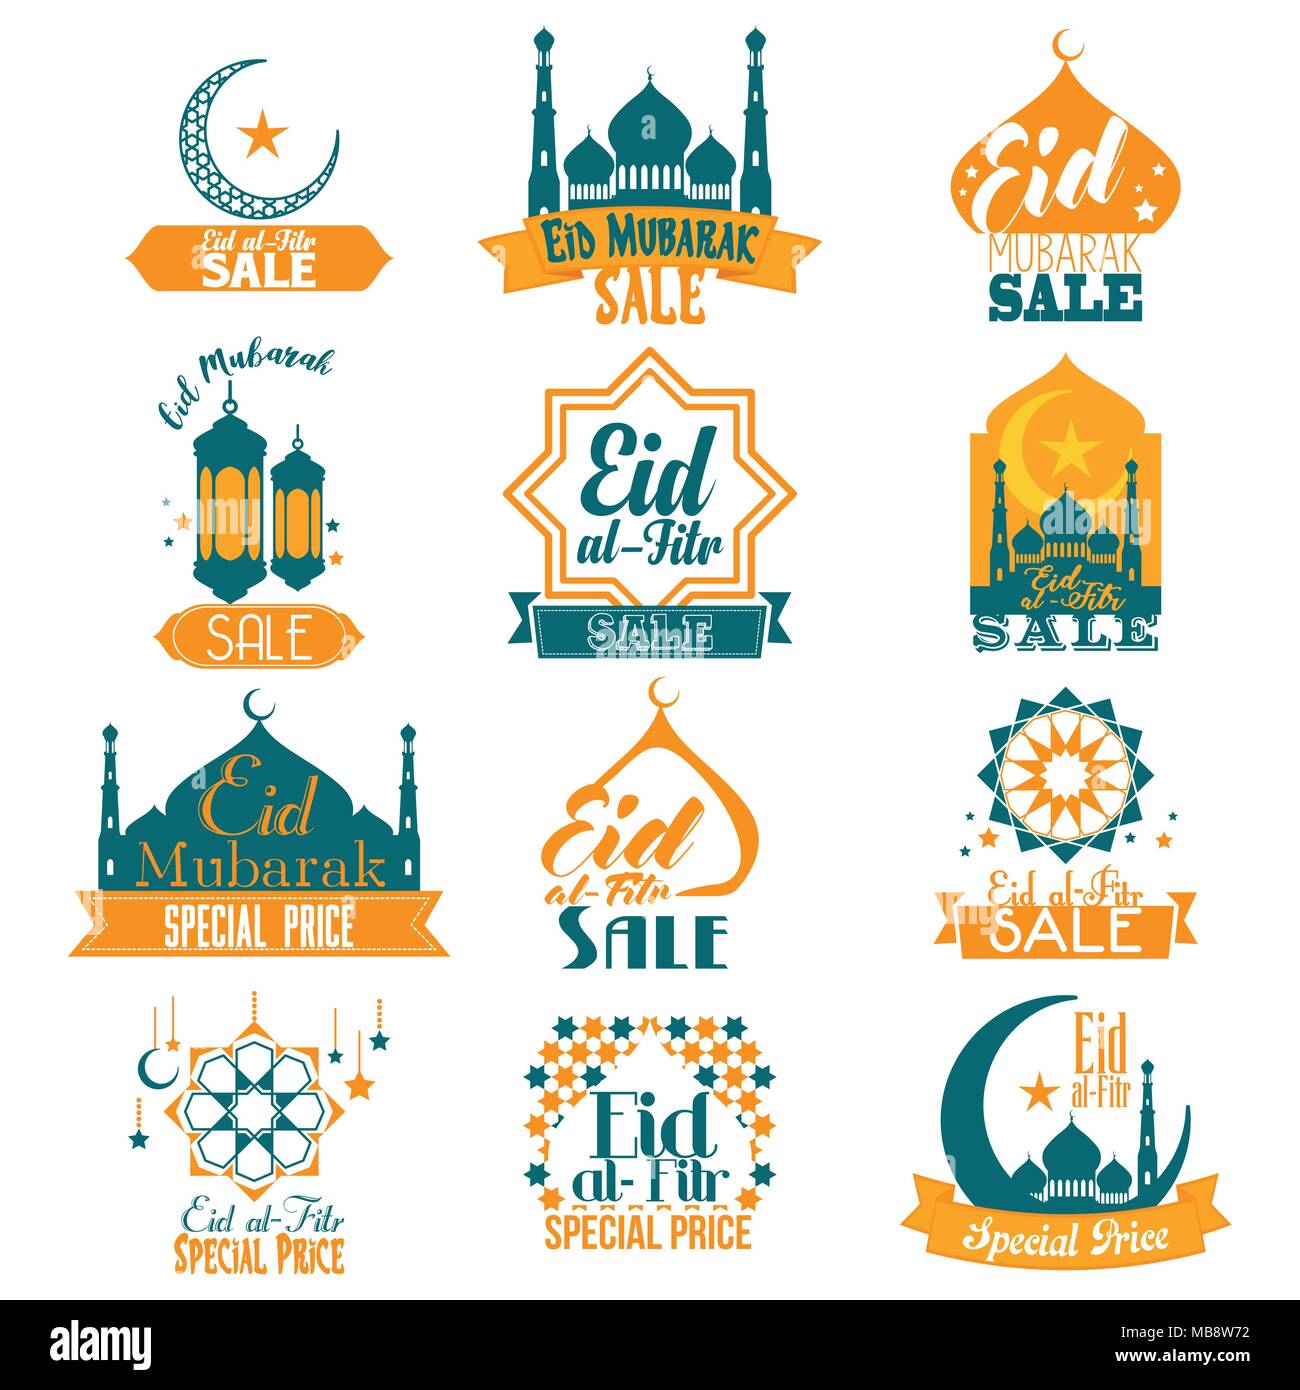 A vector illustration of Eid Al-Fitr Eid Mubarak Sale 